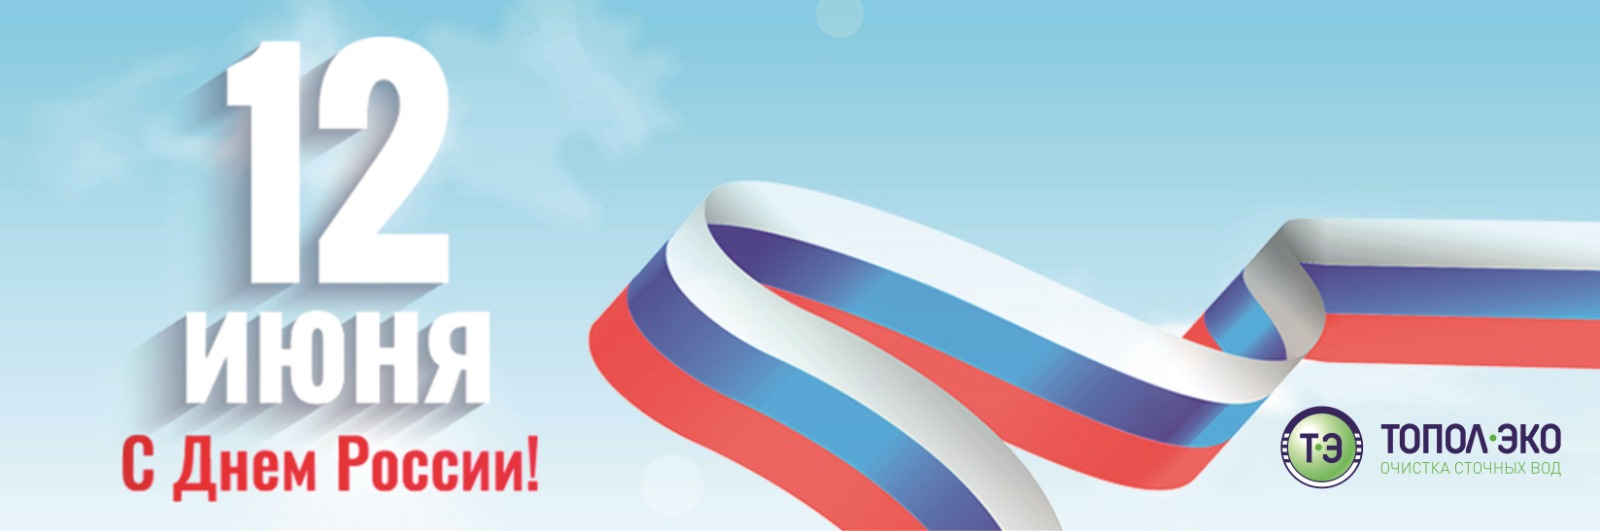 Компания «ТОПОЛ-ЭКО» поздравляет вас с Днём России!